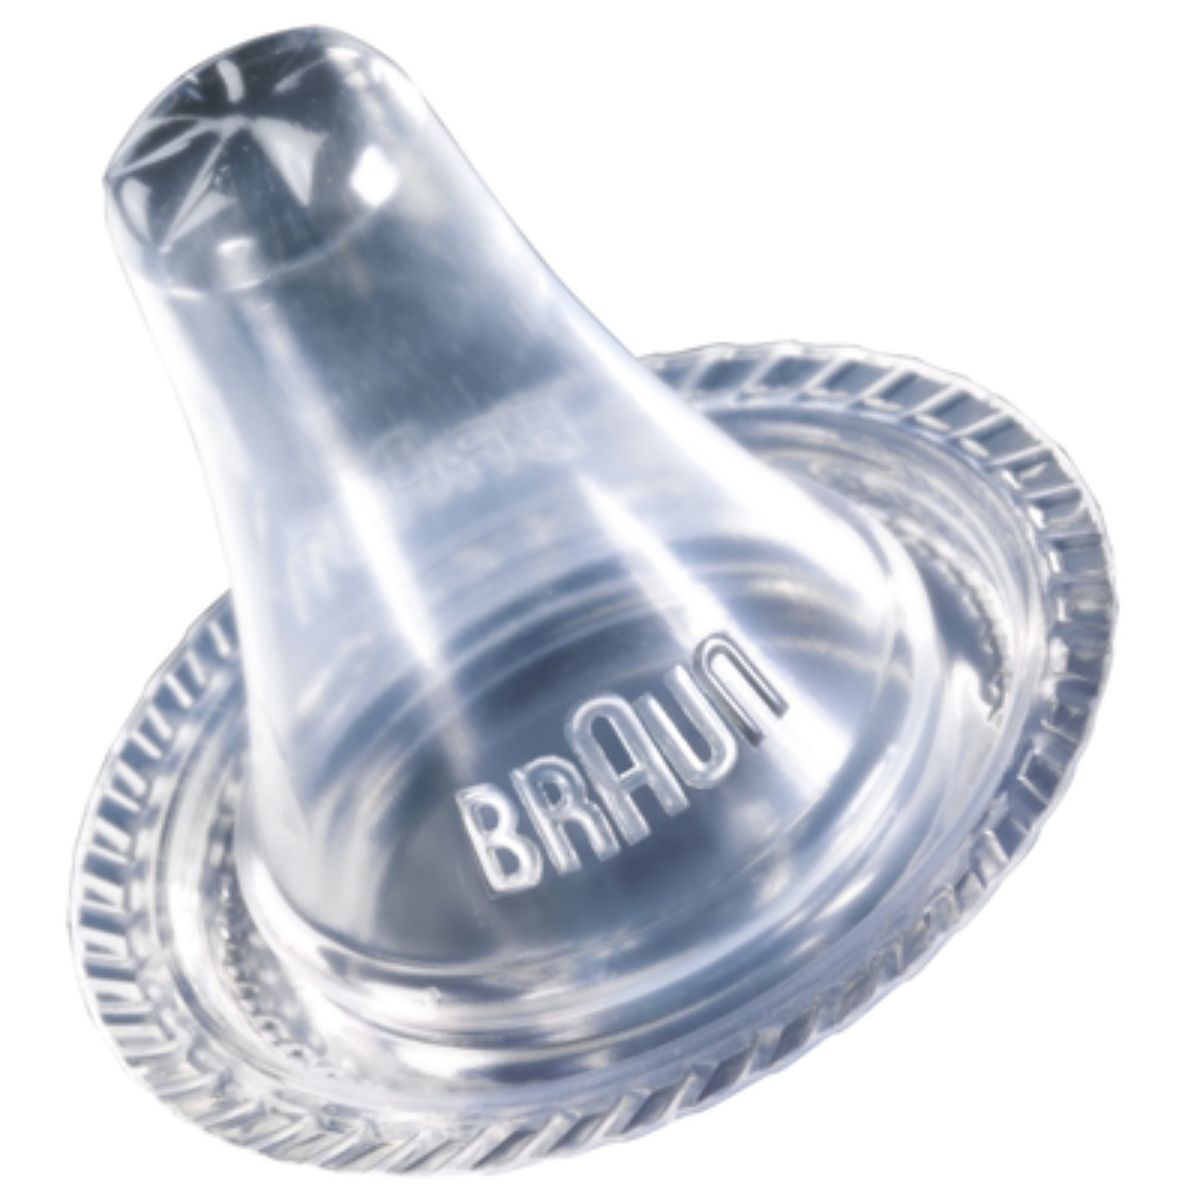 De Braun thermoscan lens filters zijn hygiënische lensfilters voor eenmalig gebruik bij de Braun thermoscan. Hiermee zorg je voor de beste kwaliteit voor je verkouden kleintje! VanZus